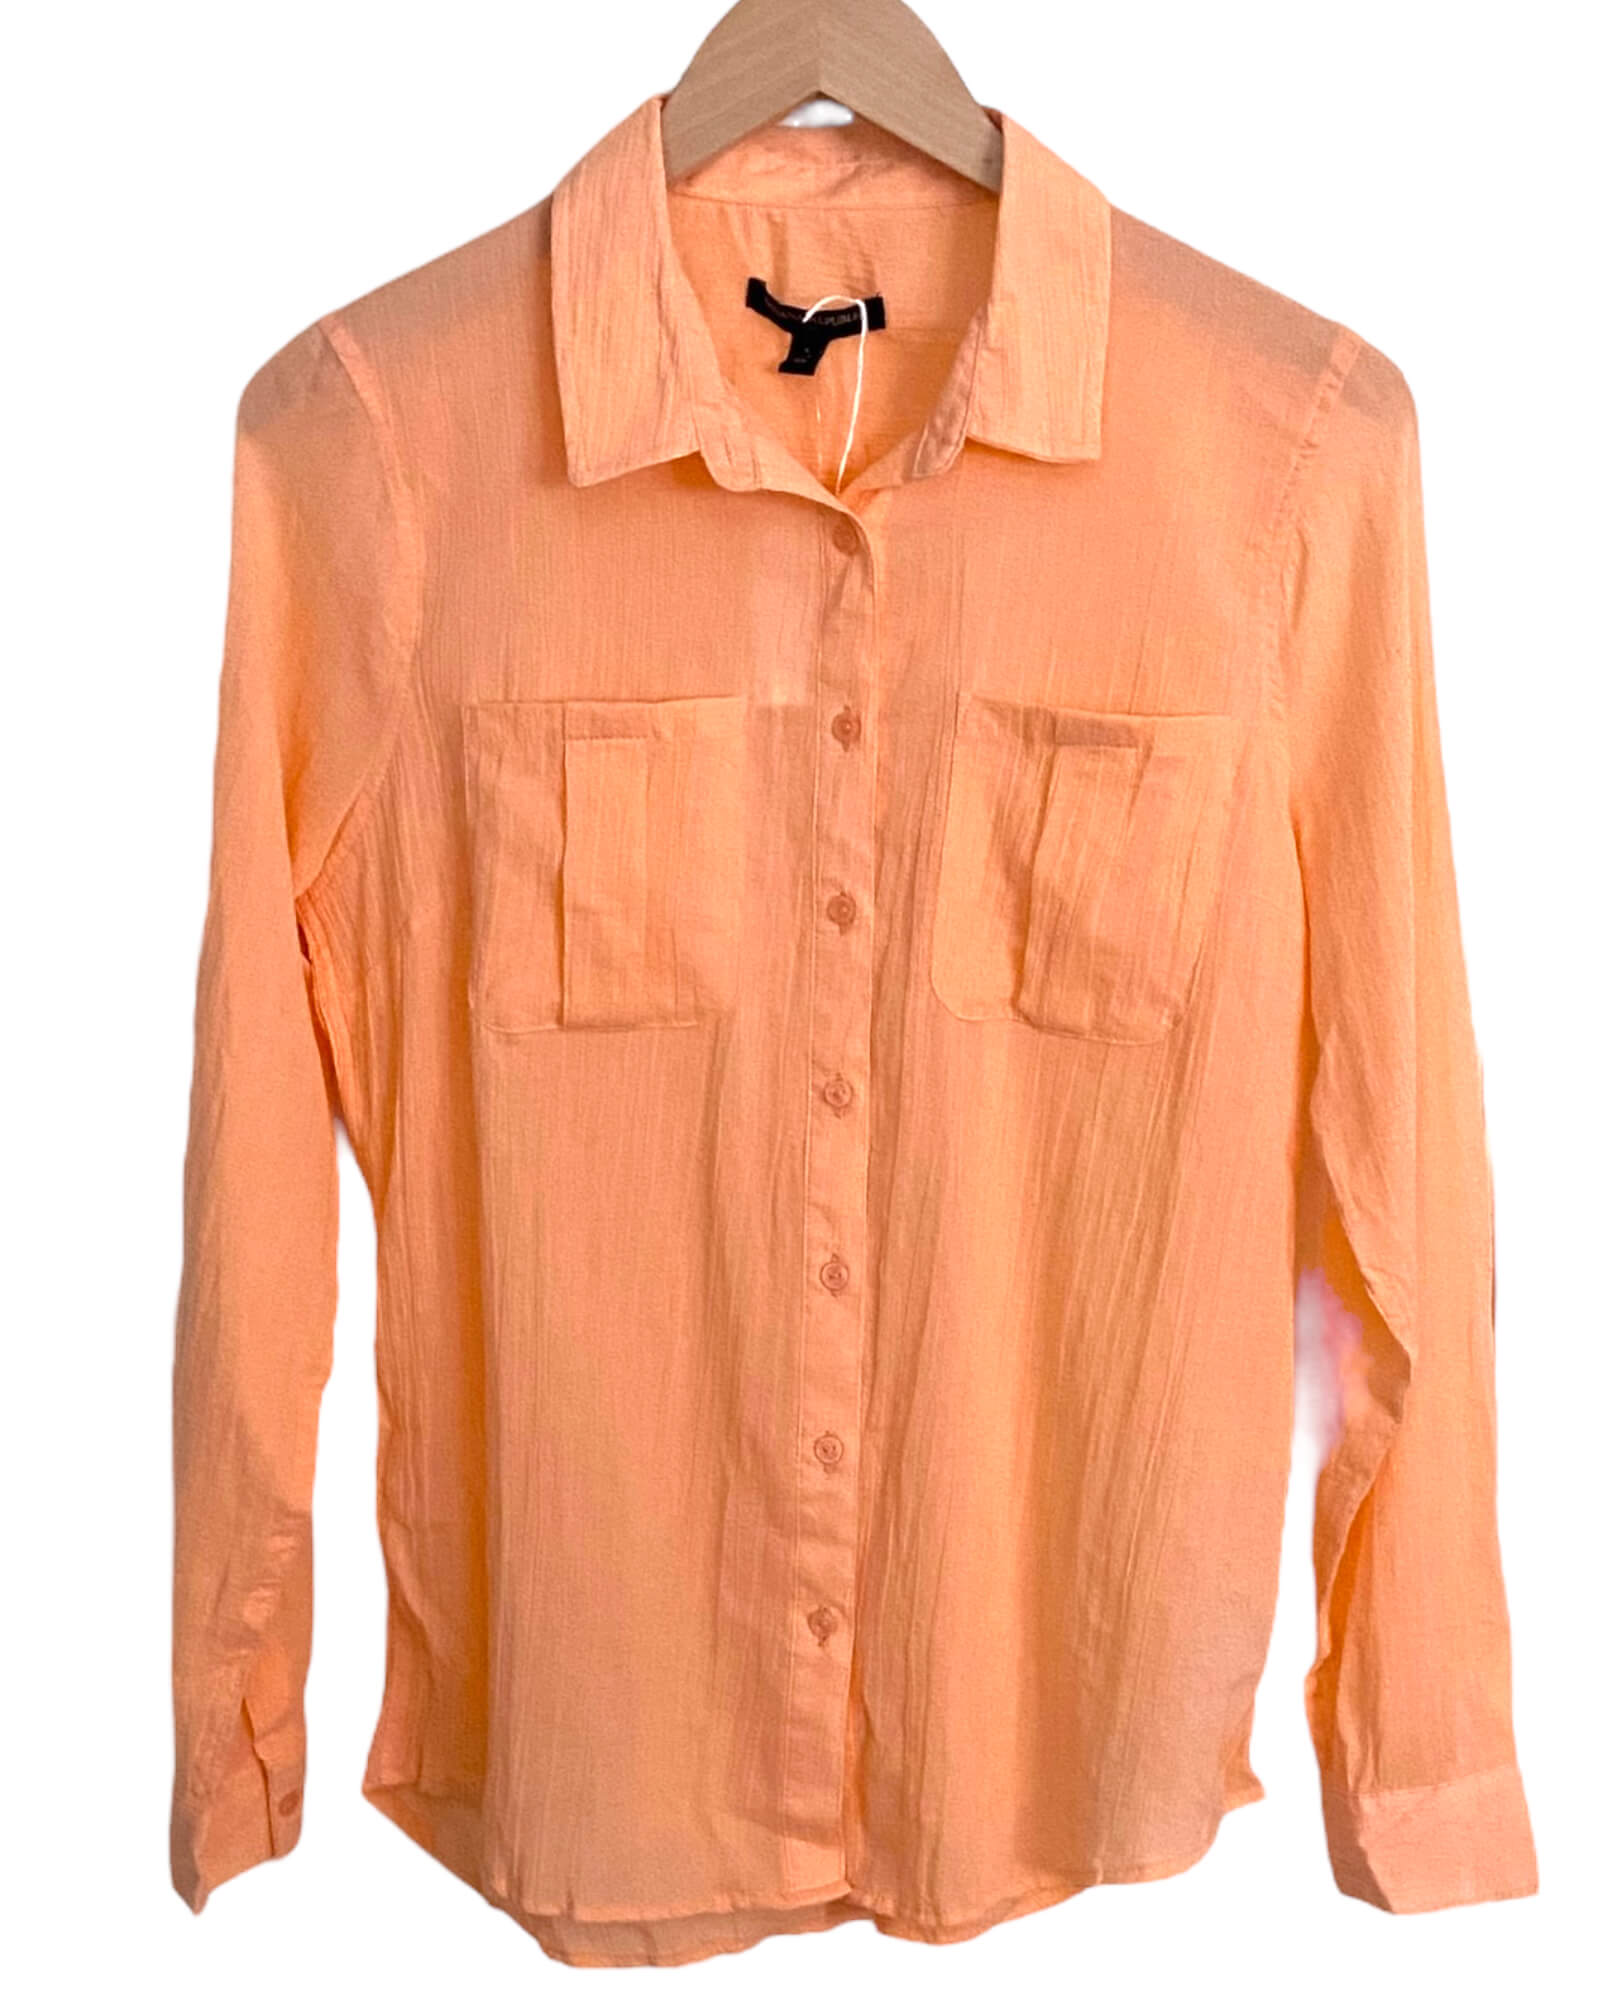 Warm Spring BANANA REPUBLIC peach crinkle button-down shirt